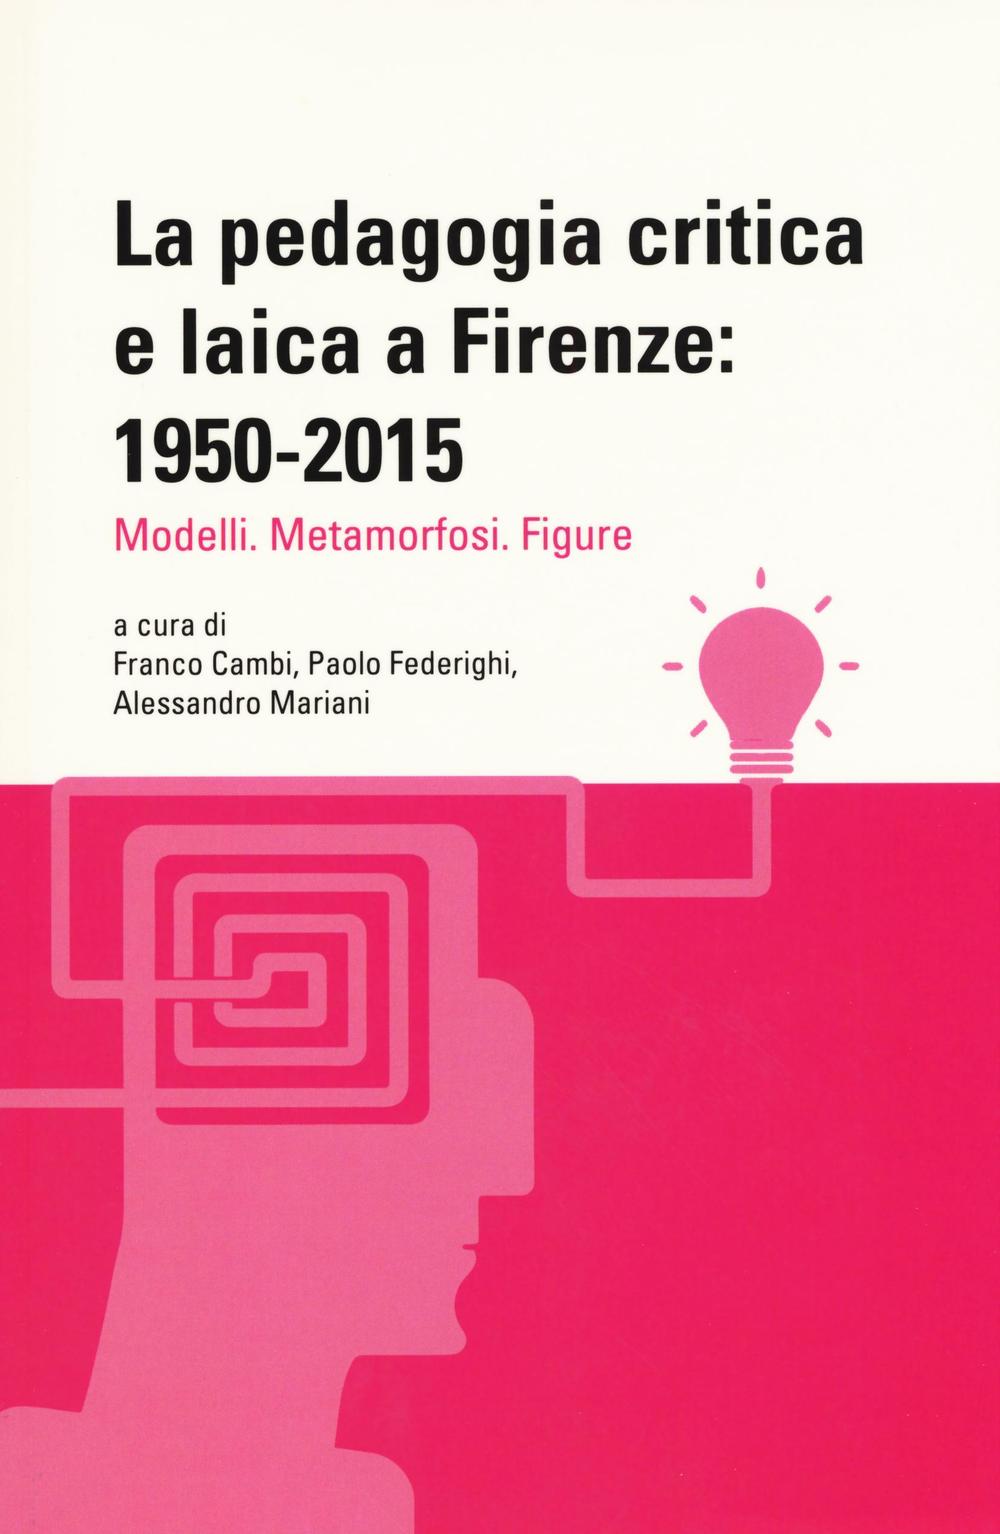 La pedagogia critica e laica a Firenze: 1950-2015. Modelli. Metamorfosi. Figure